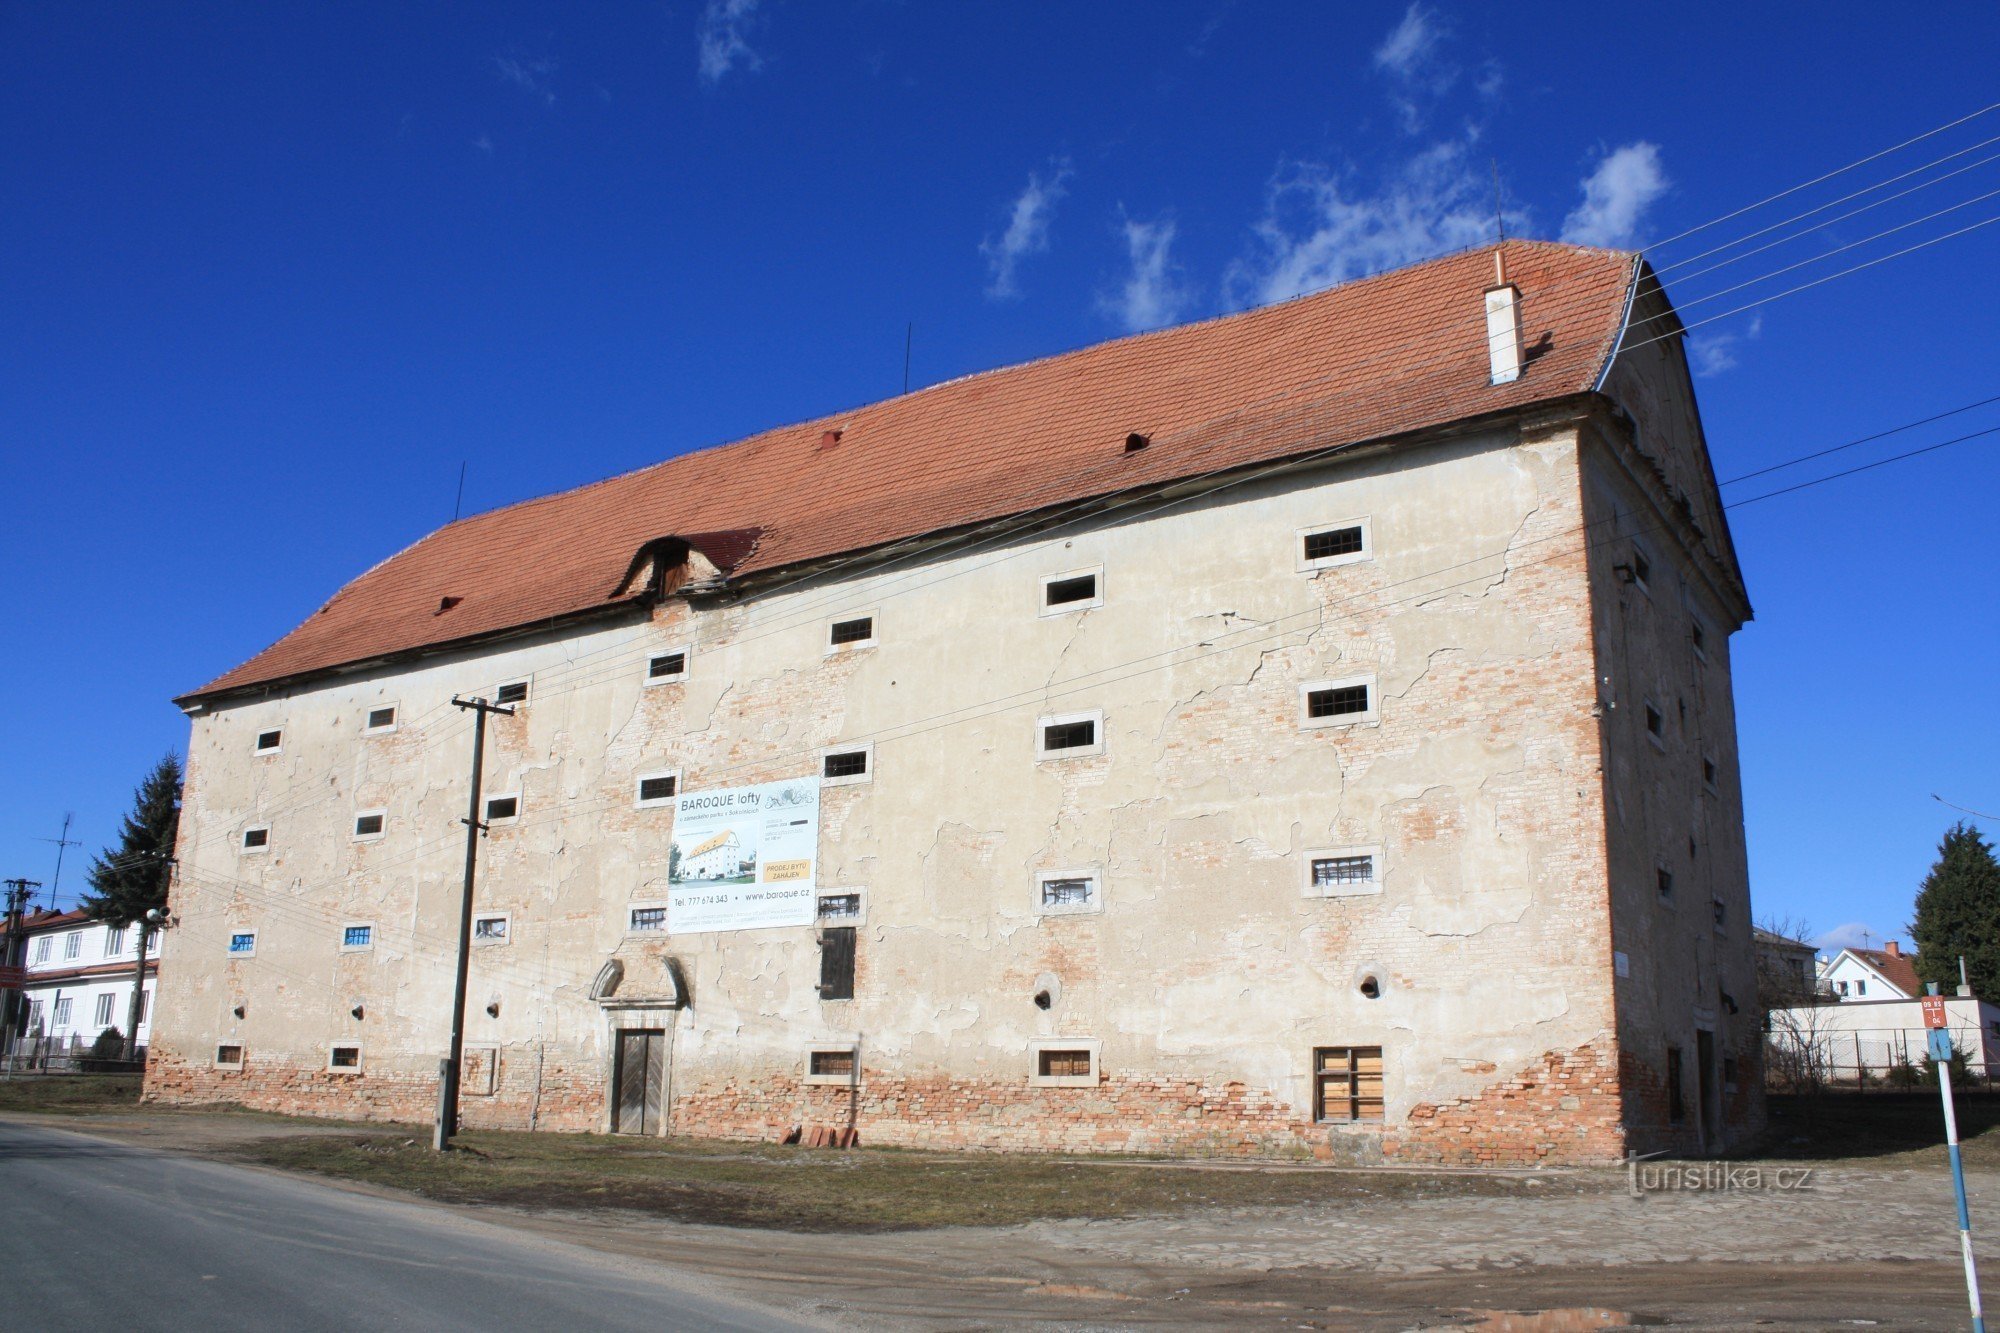 Sokolnice - baroque castle granary